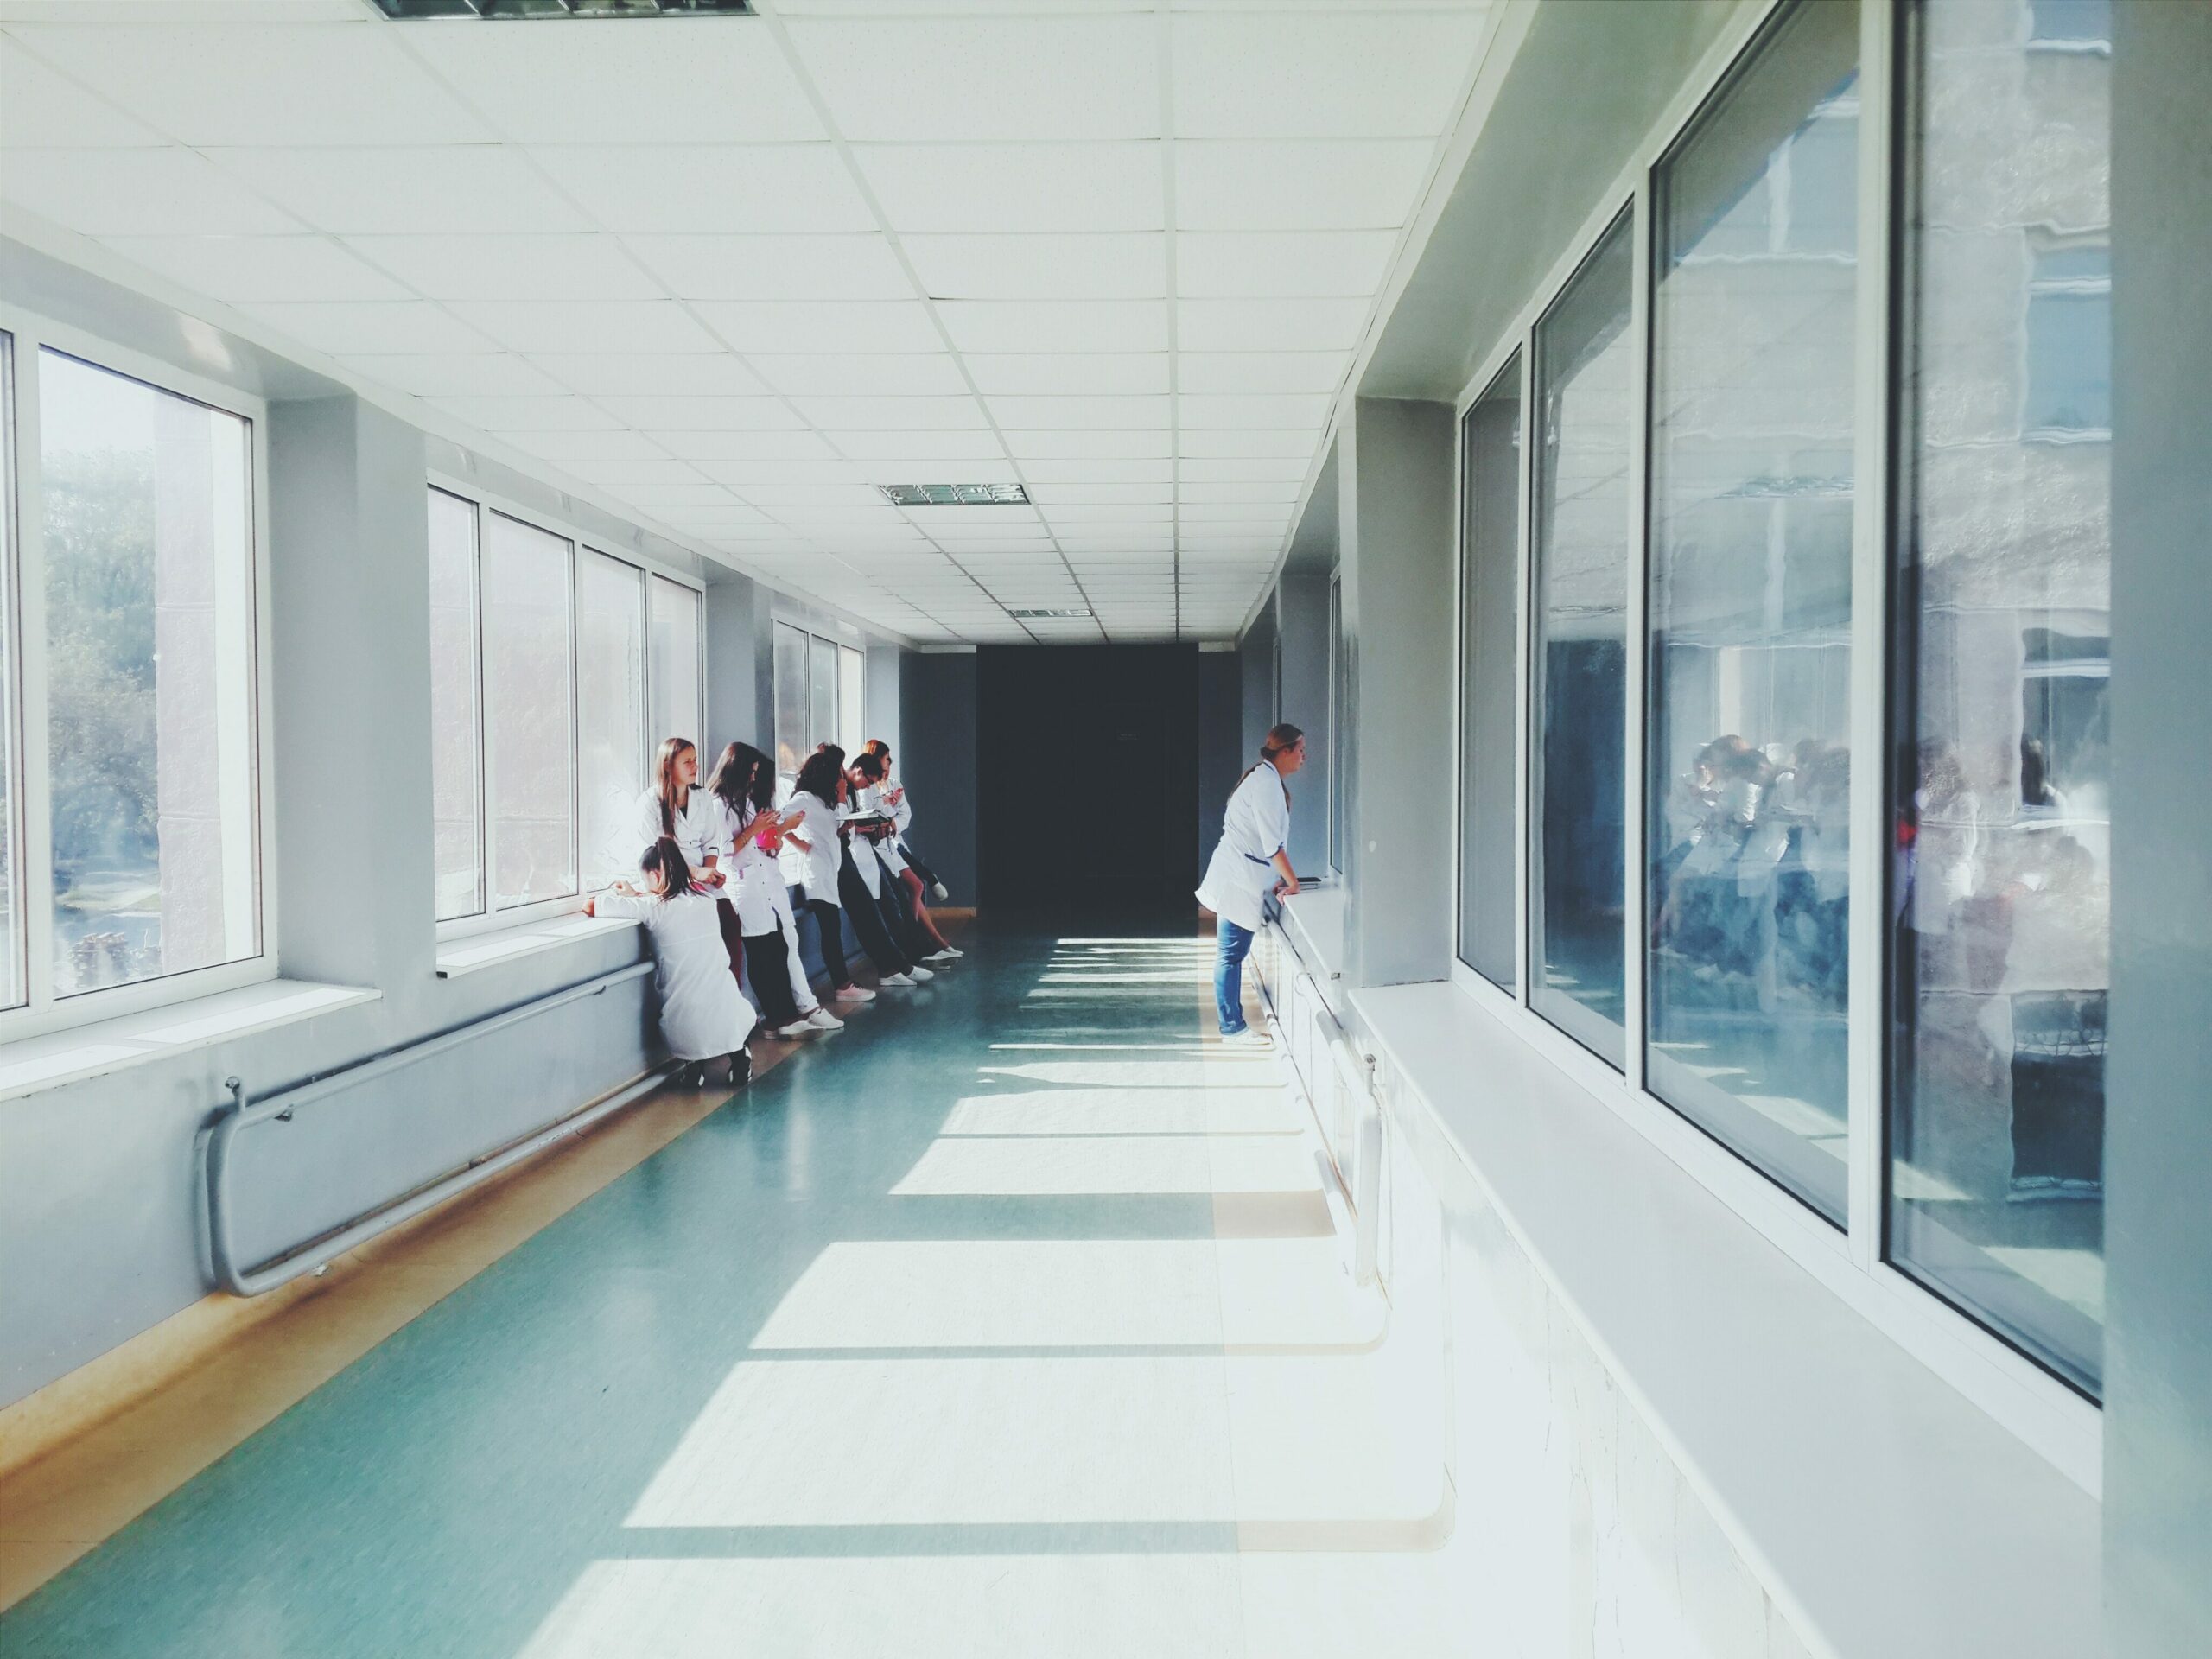 Versorgungsqualität Gesundheitswesen: Ein Krankenhausflur, in dem mehrere Mitarbeitende aufgereiht warten